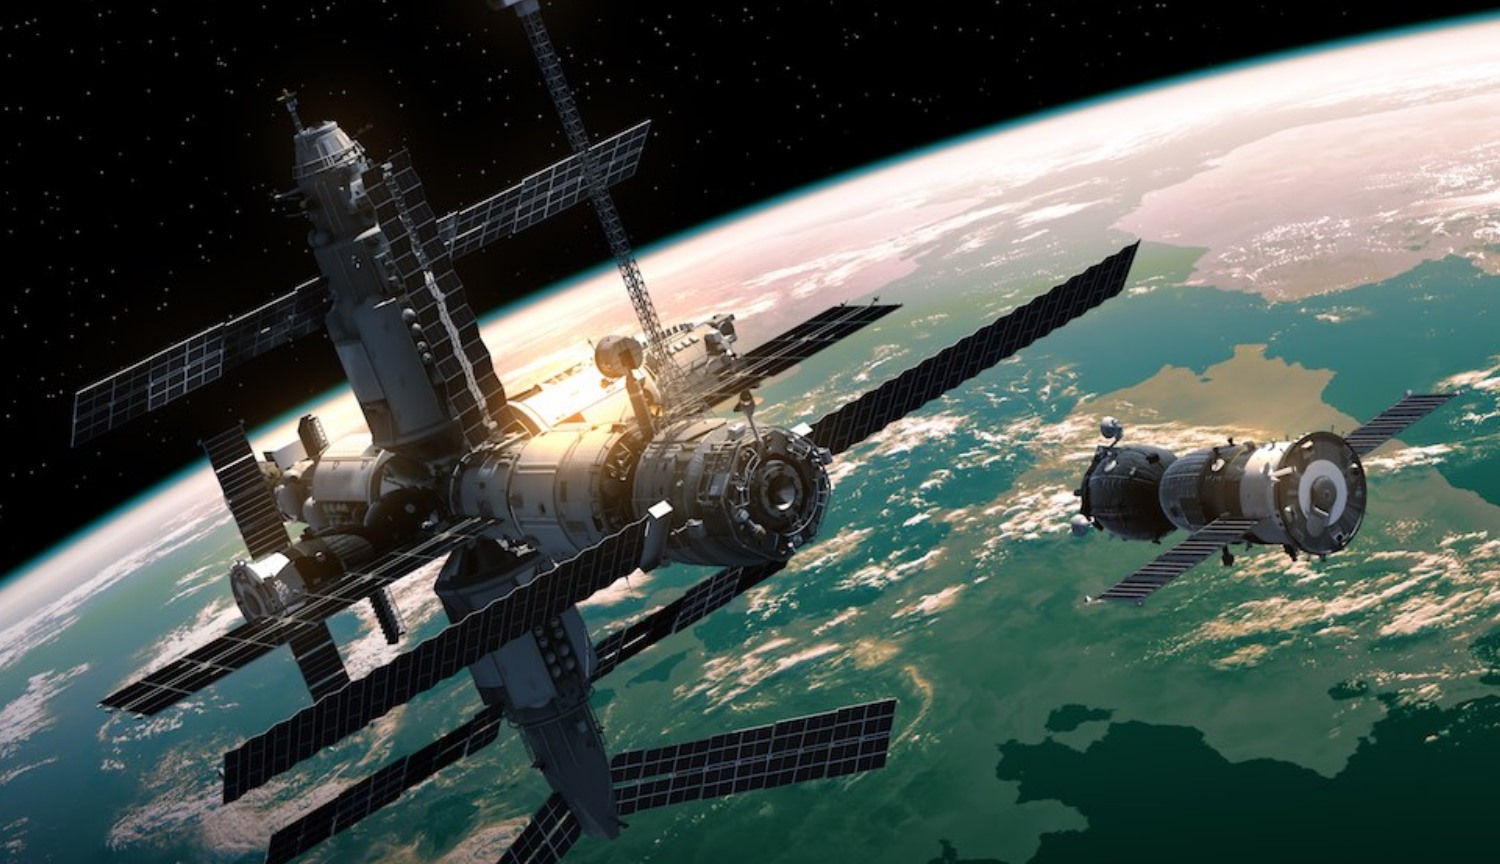 NASA chce kupić od agencji kosmicznej dwa miejsca do lotów na ISS